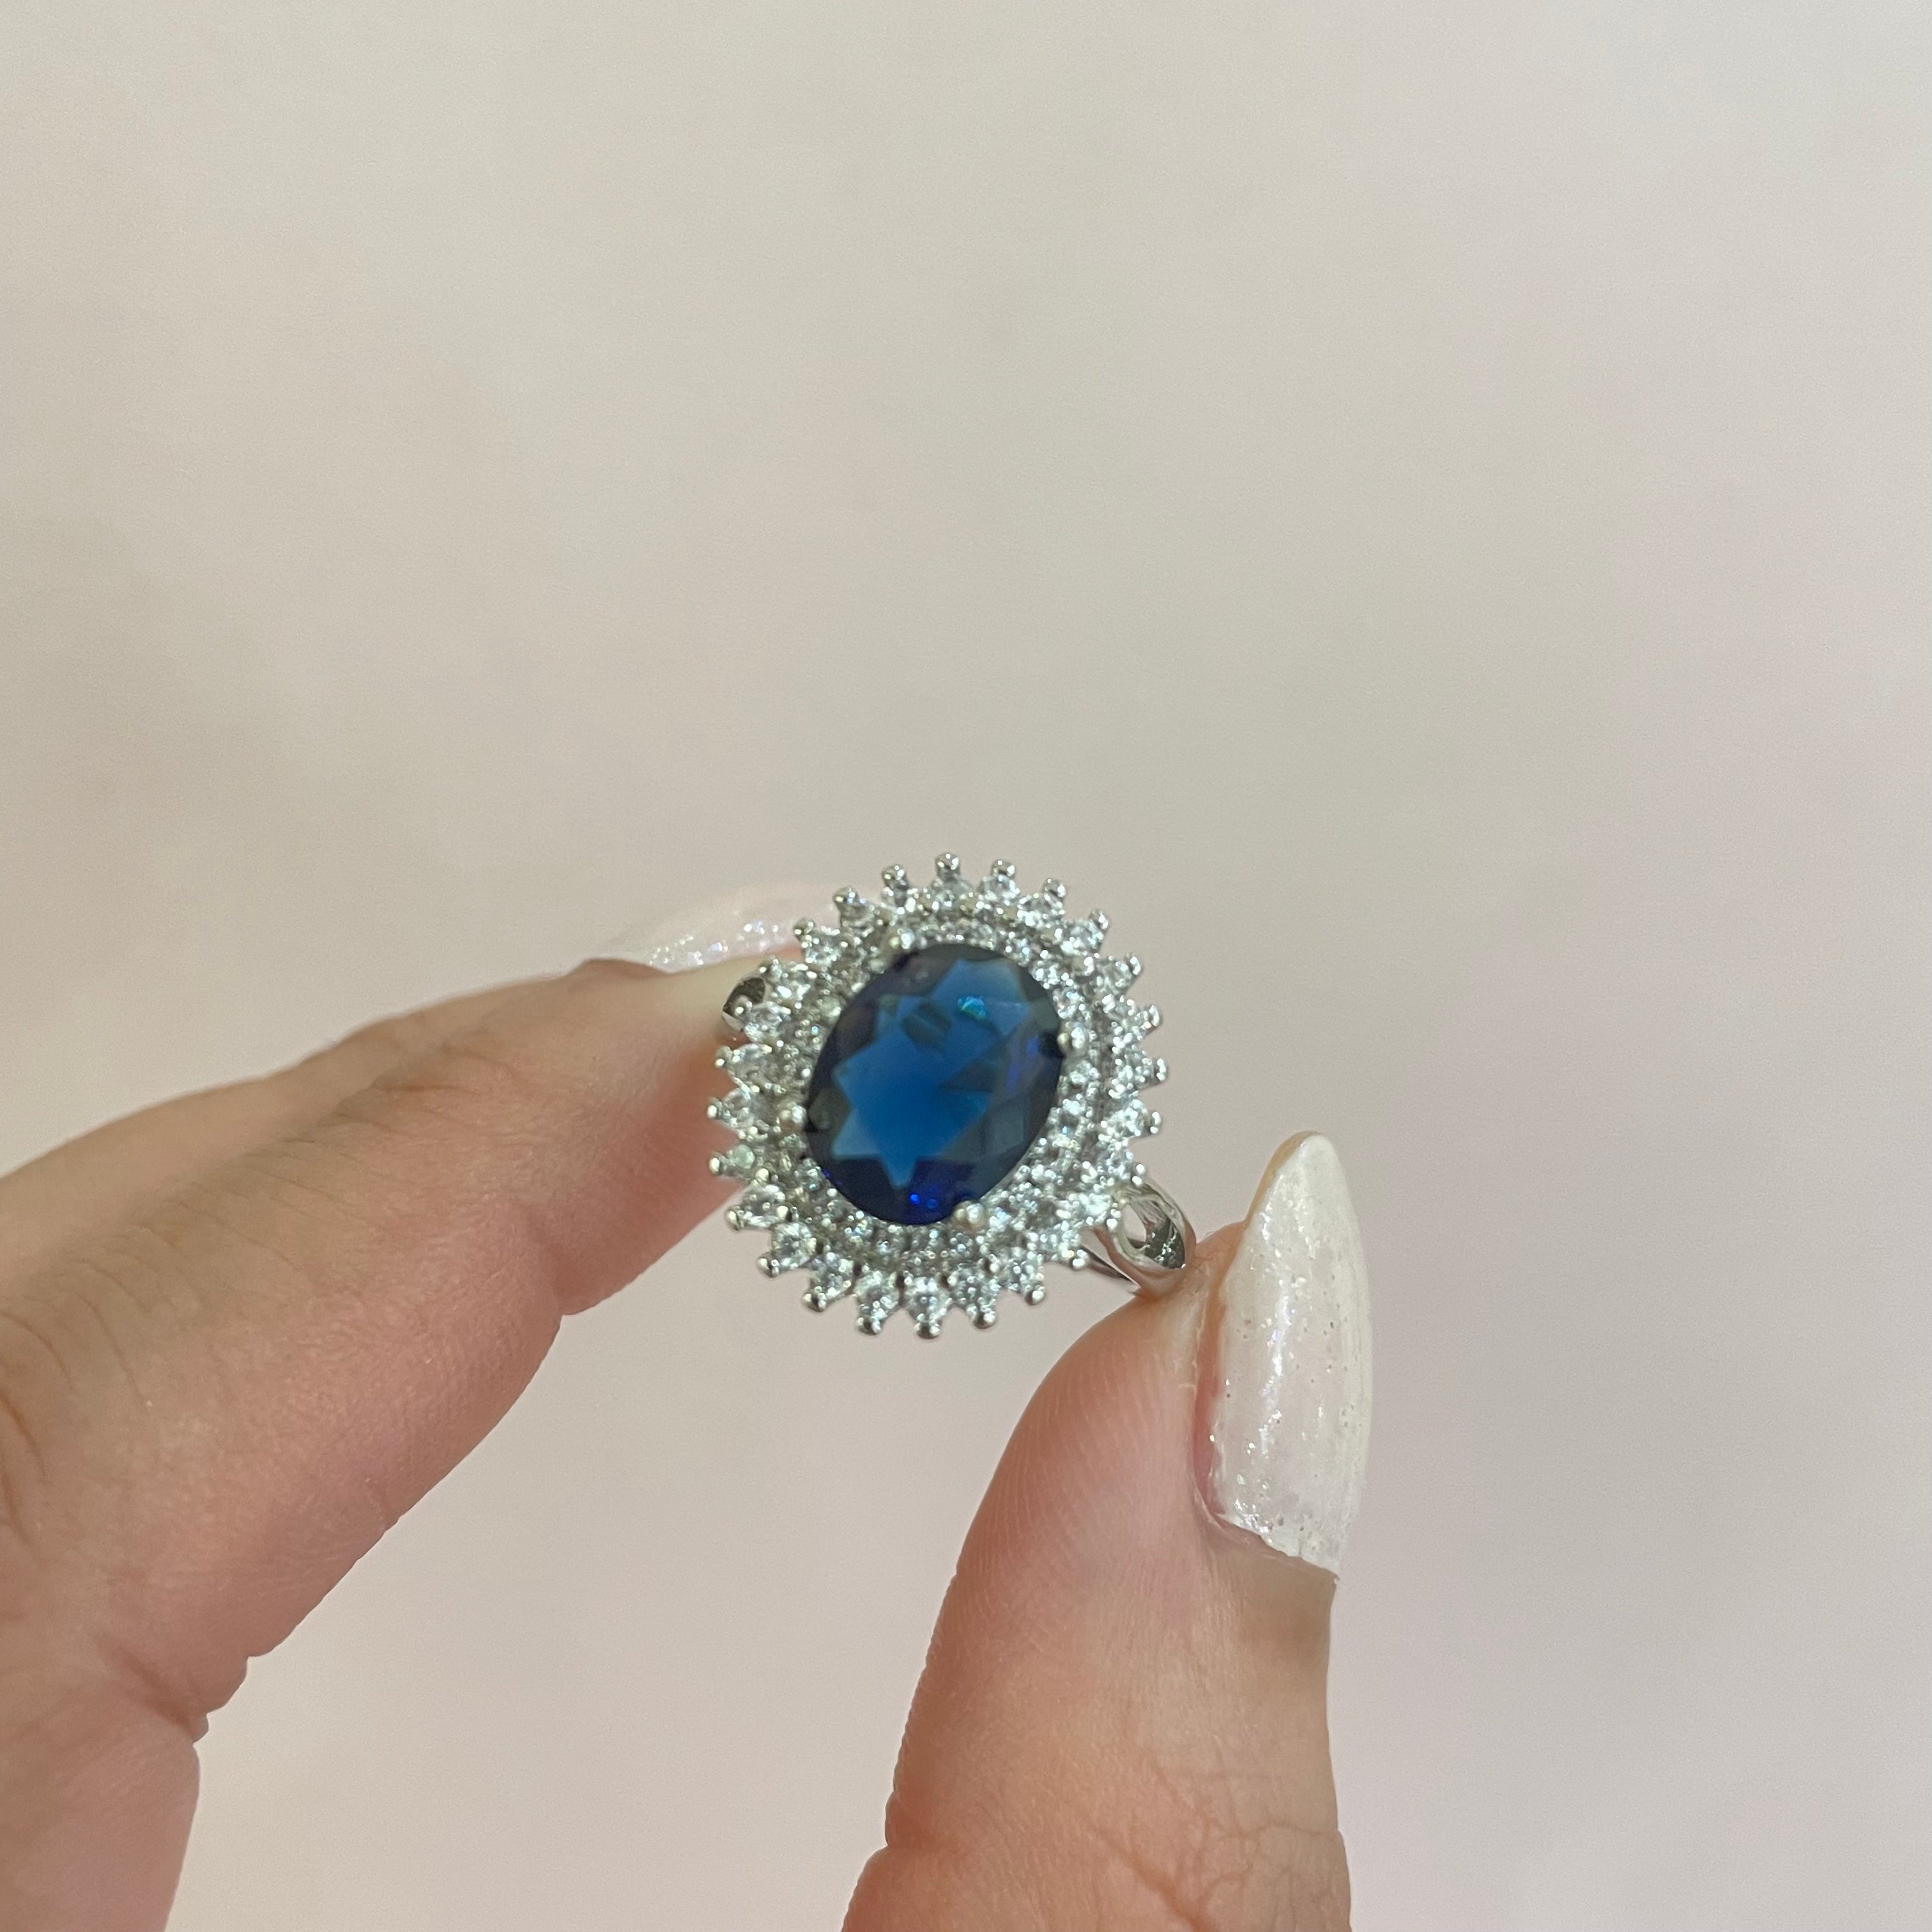 Elegant navy blue C.Z ring